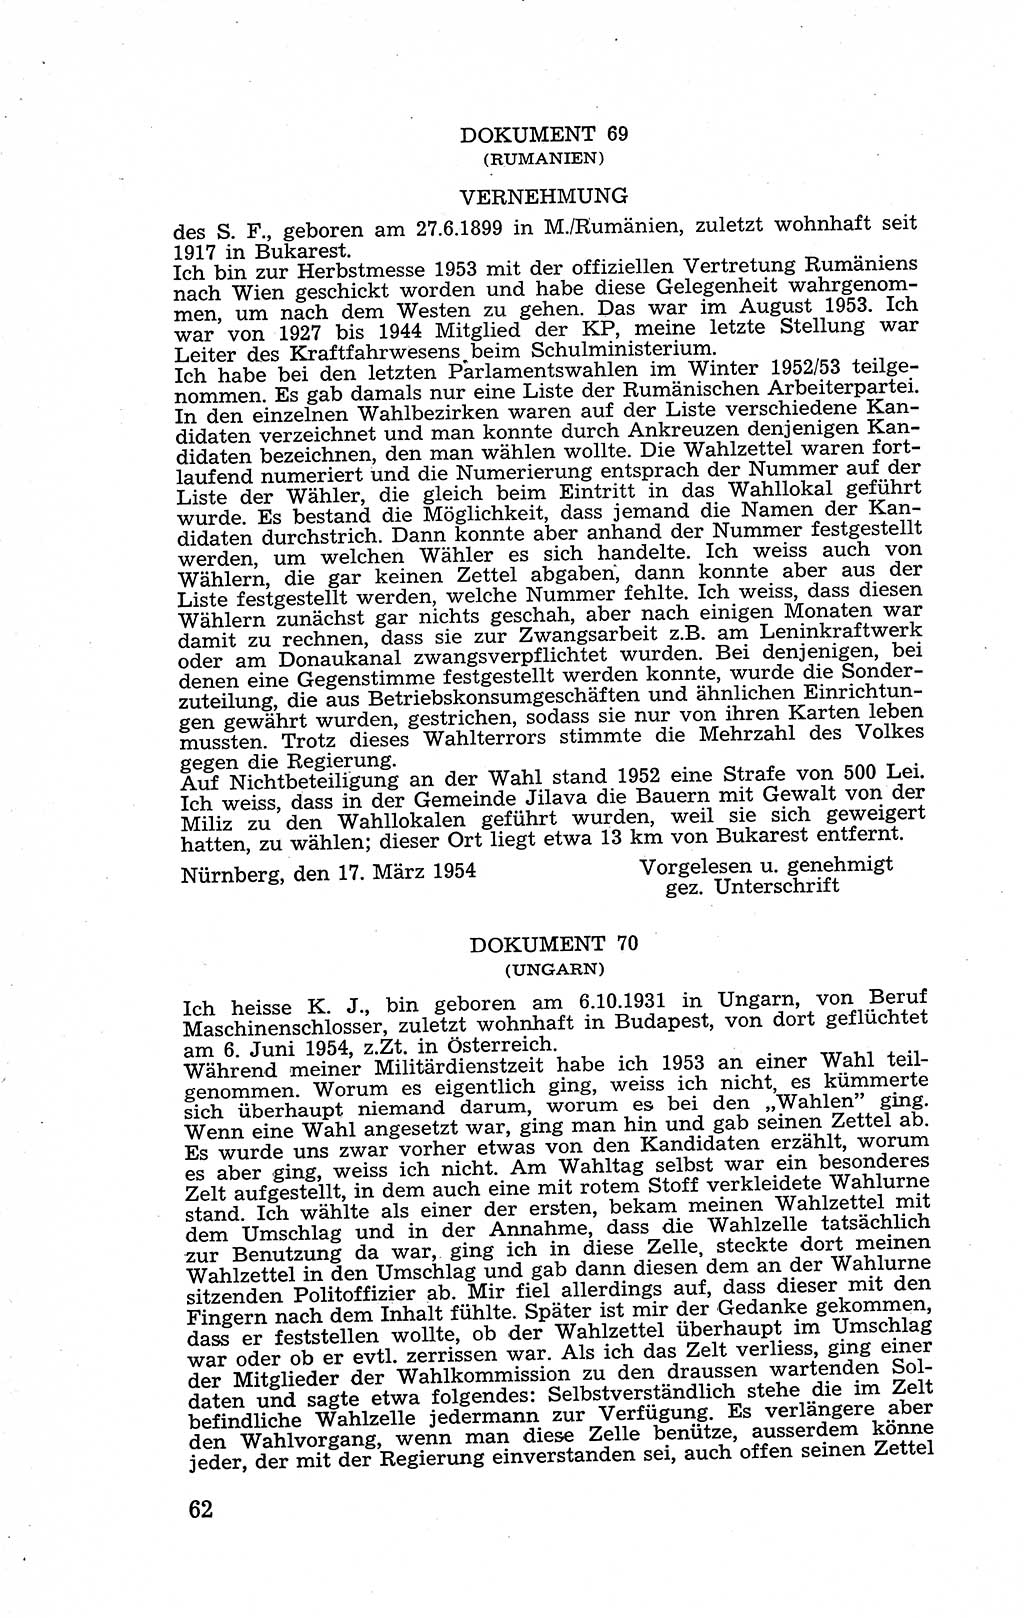 Recht in Fesseln, Dokumente, Internationale Juristen-Kommission [Bundesrepublik Deutschland (BRD)] 1955, Seite 62 (R. Dok. IJK BRD 1955, S. 62)